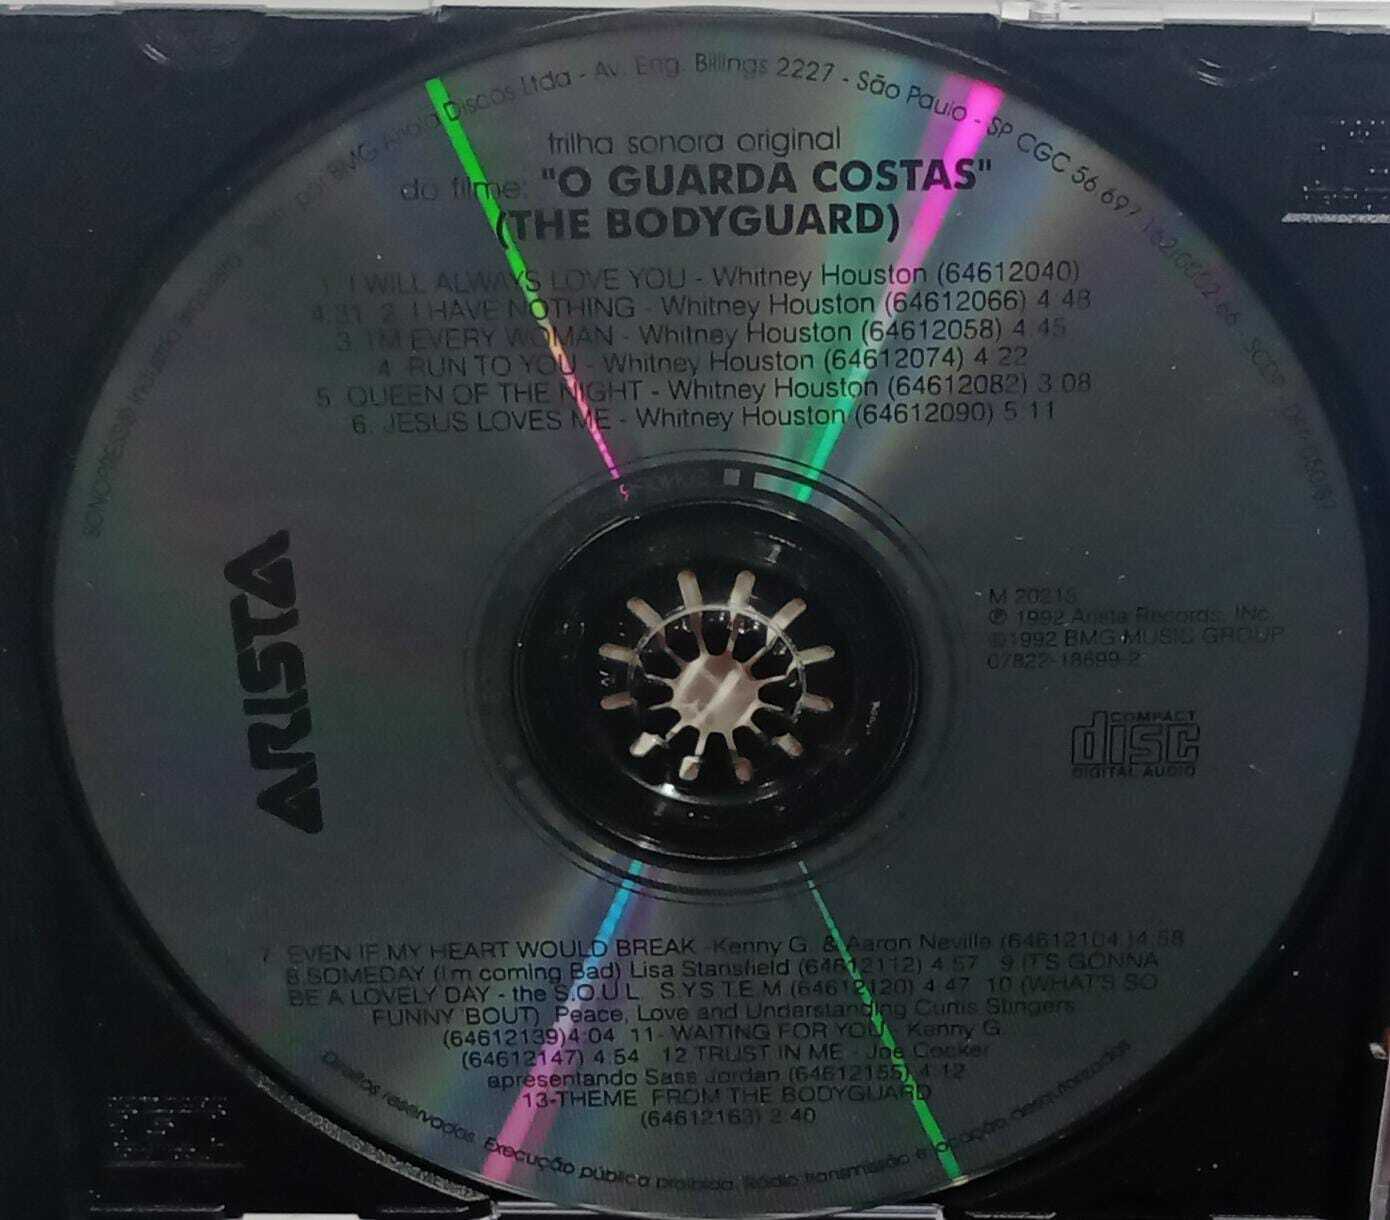 CD - The Bodyguard - Original Soundtrack Album